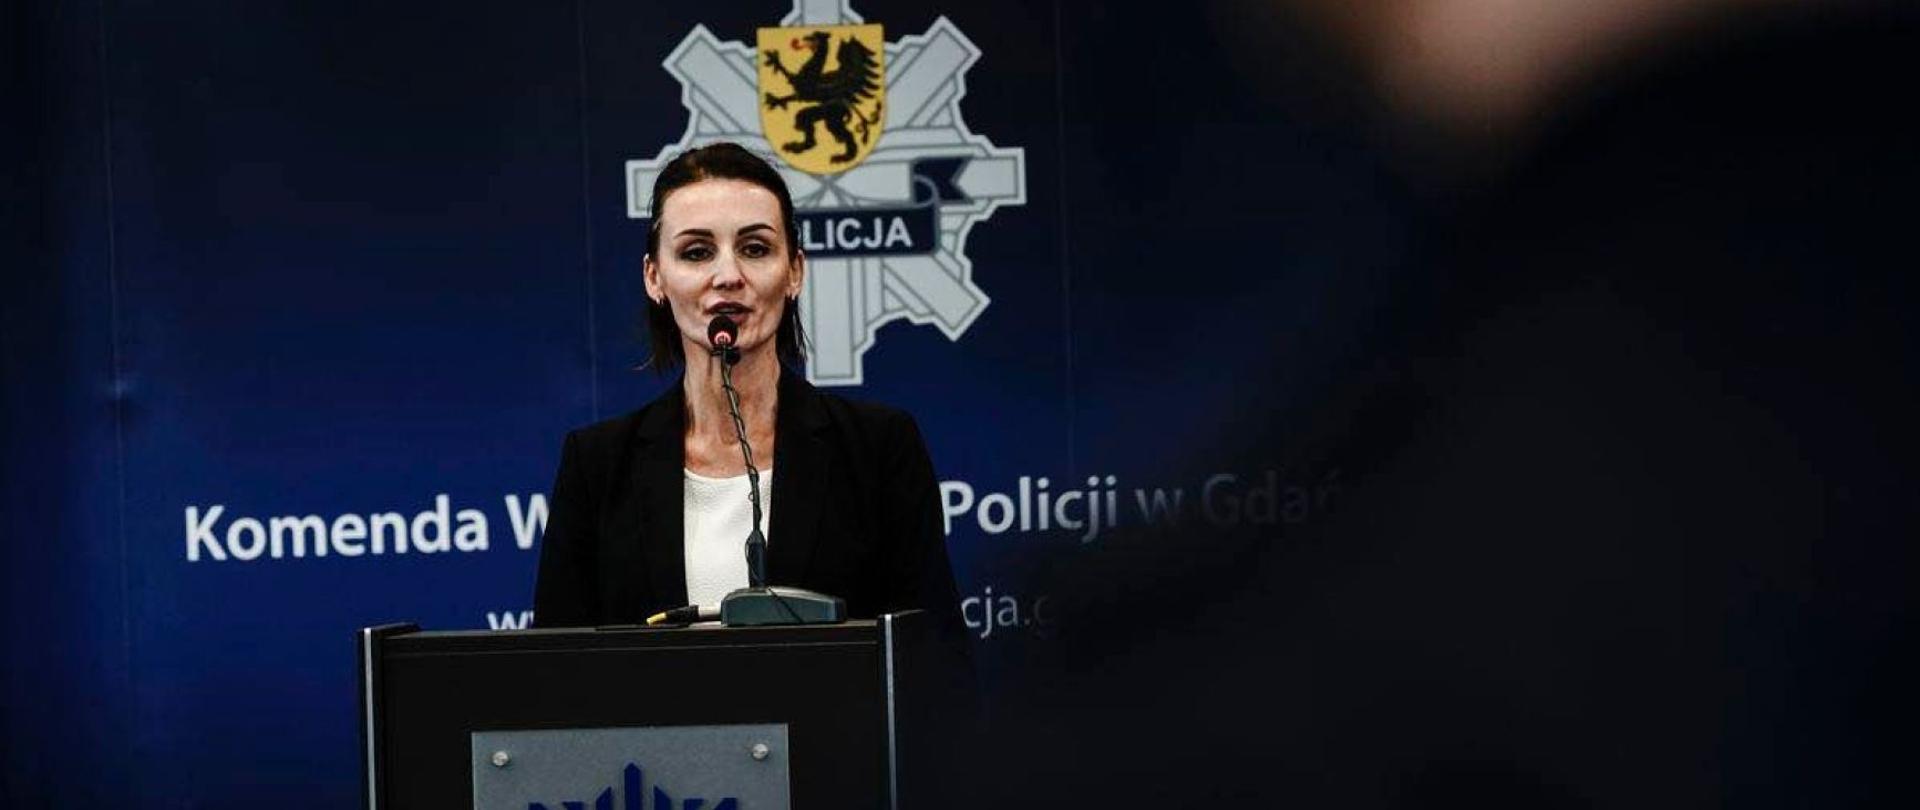 Kobieta (wojewoda) stoi przy mównicy, za nią napis Komenda Wojewódzka Policji w Gdansku